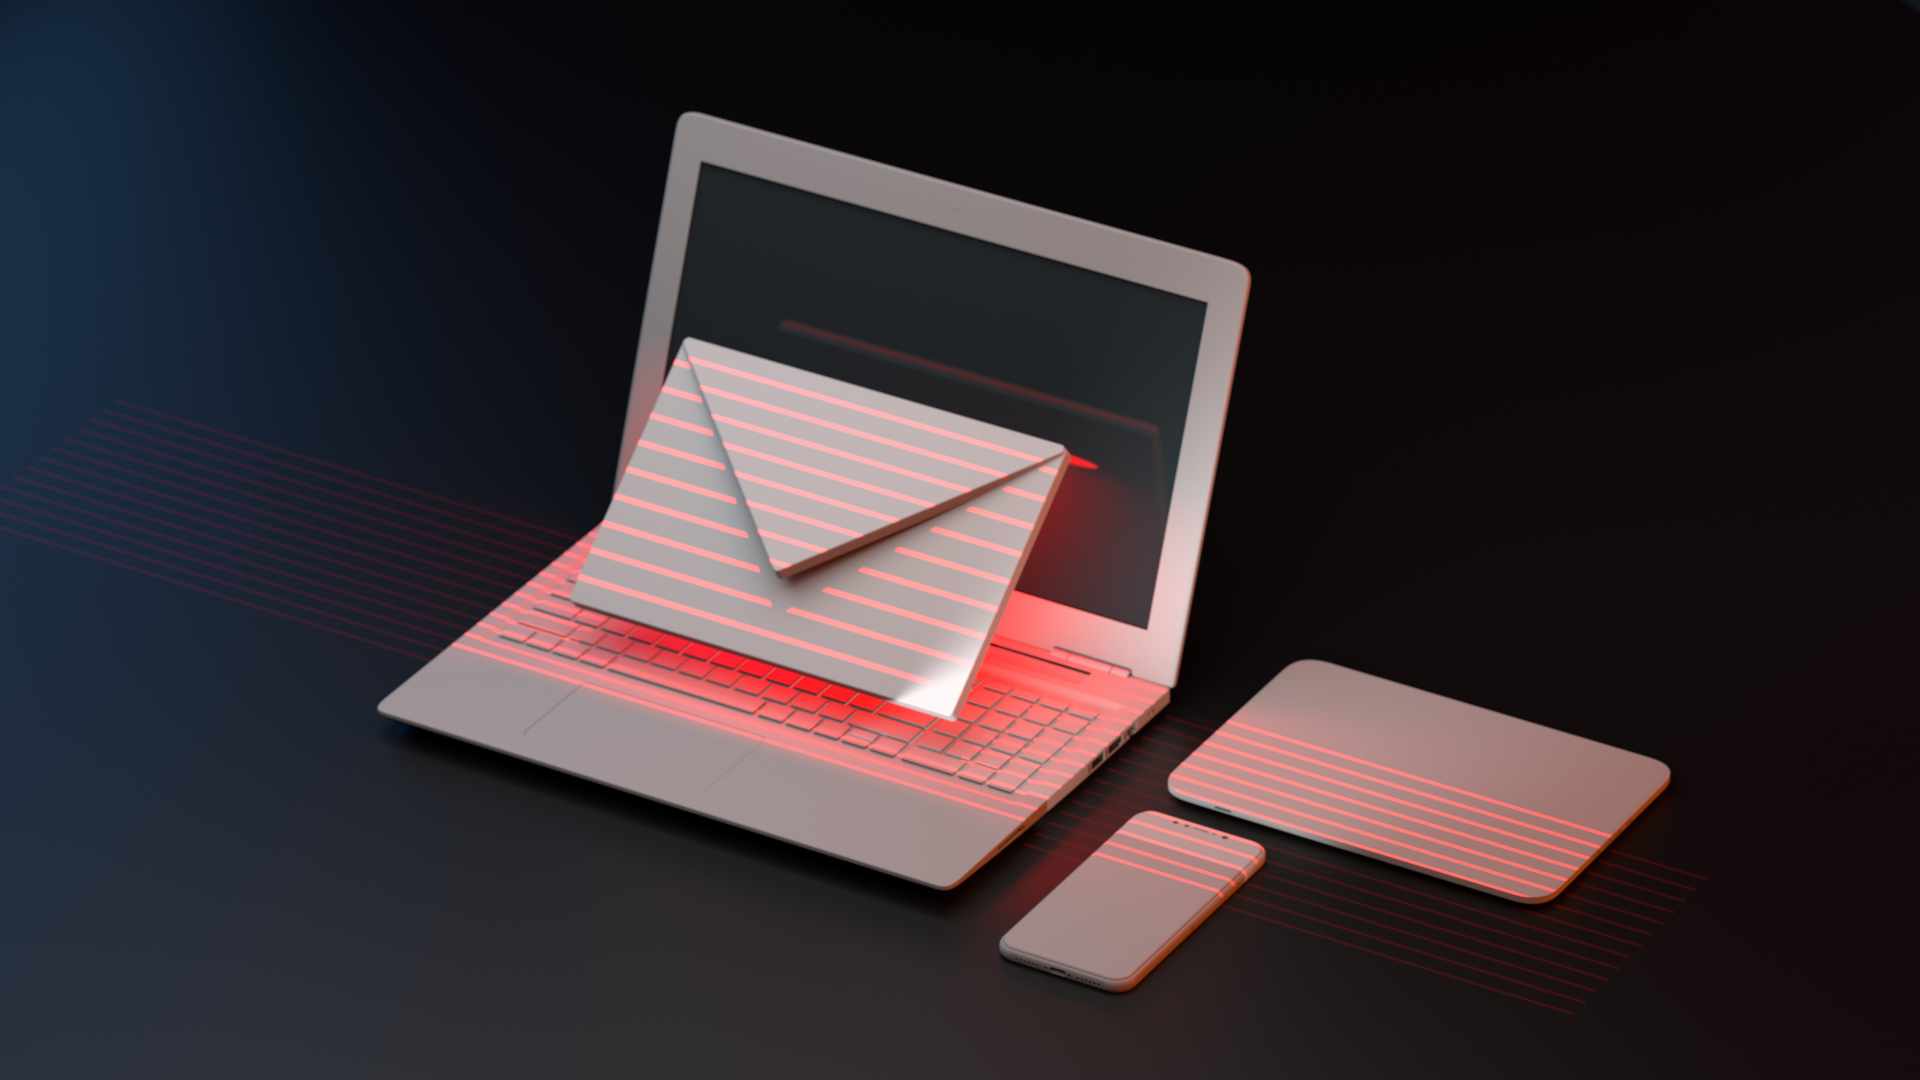 Immer mehr Angriffe auf geschäftliche E-Mail-Postfächer